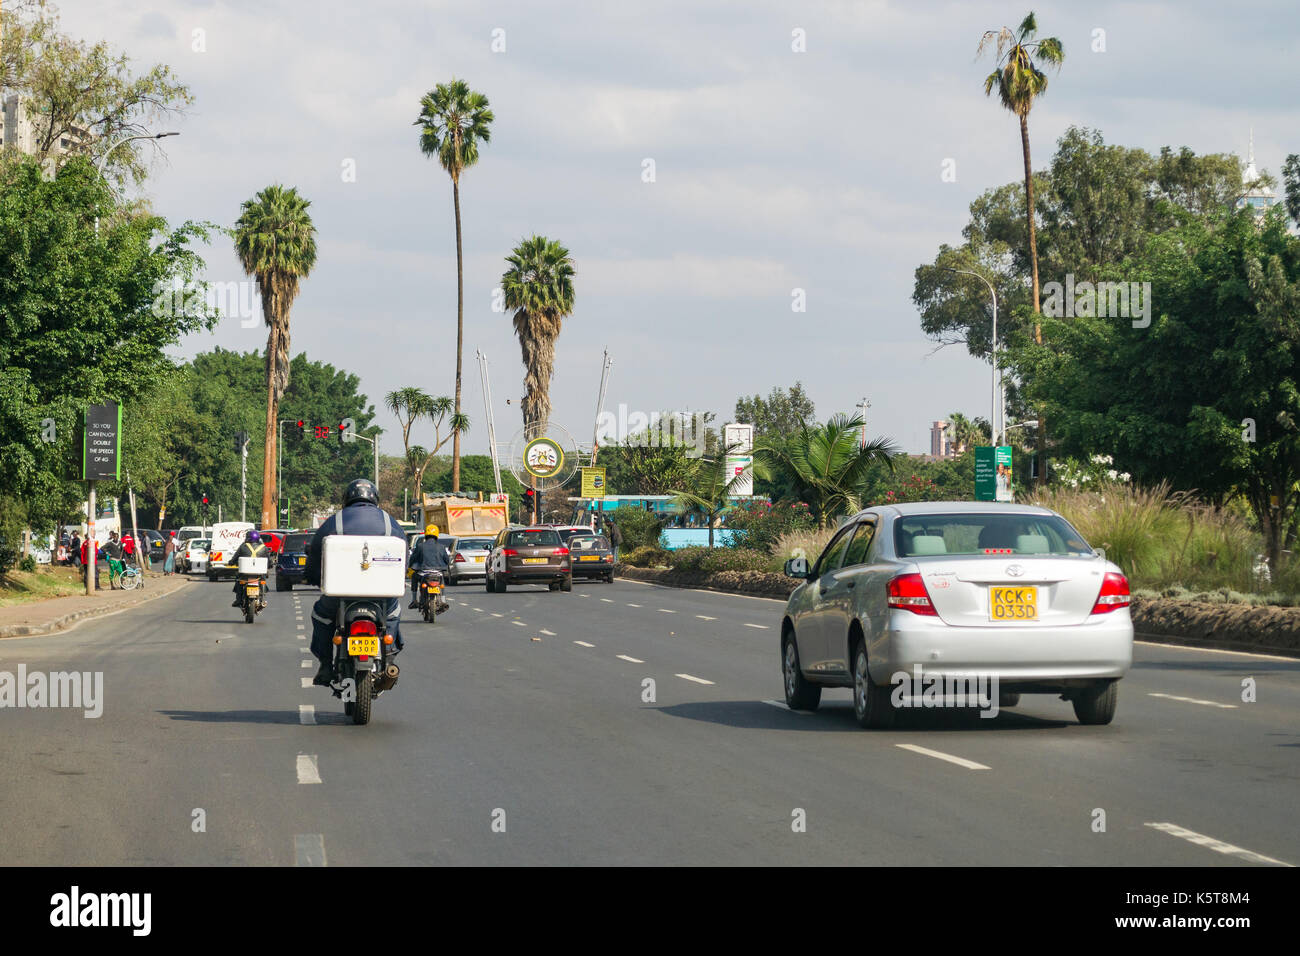 Vehicles on Uhuru Highway during the day, Nairobi, Kenya Stock Photo